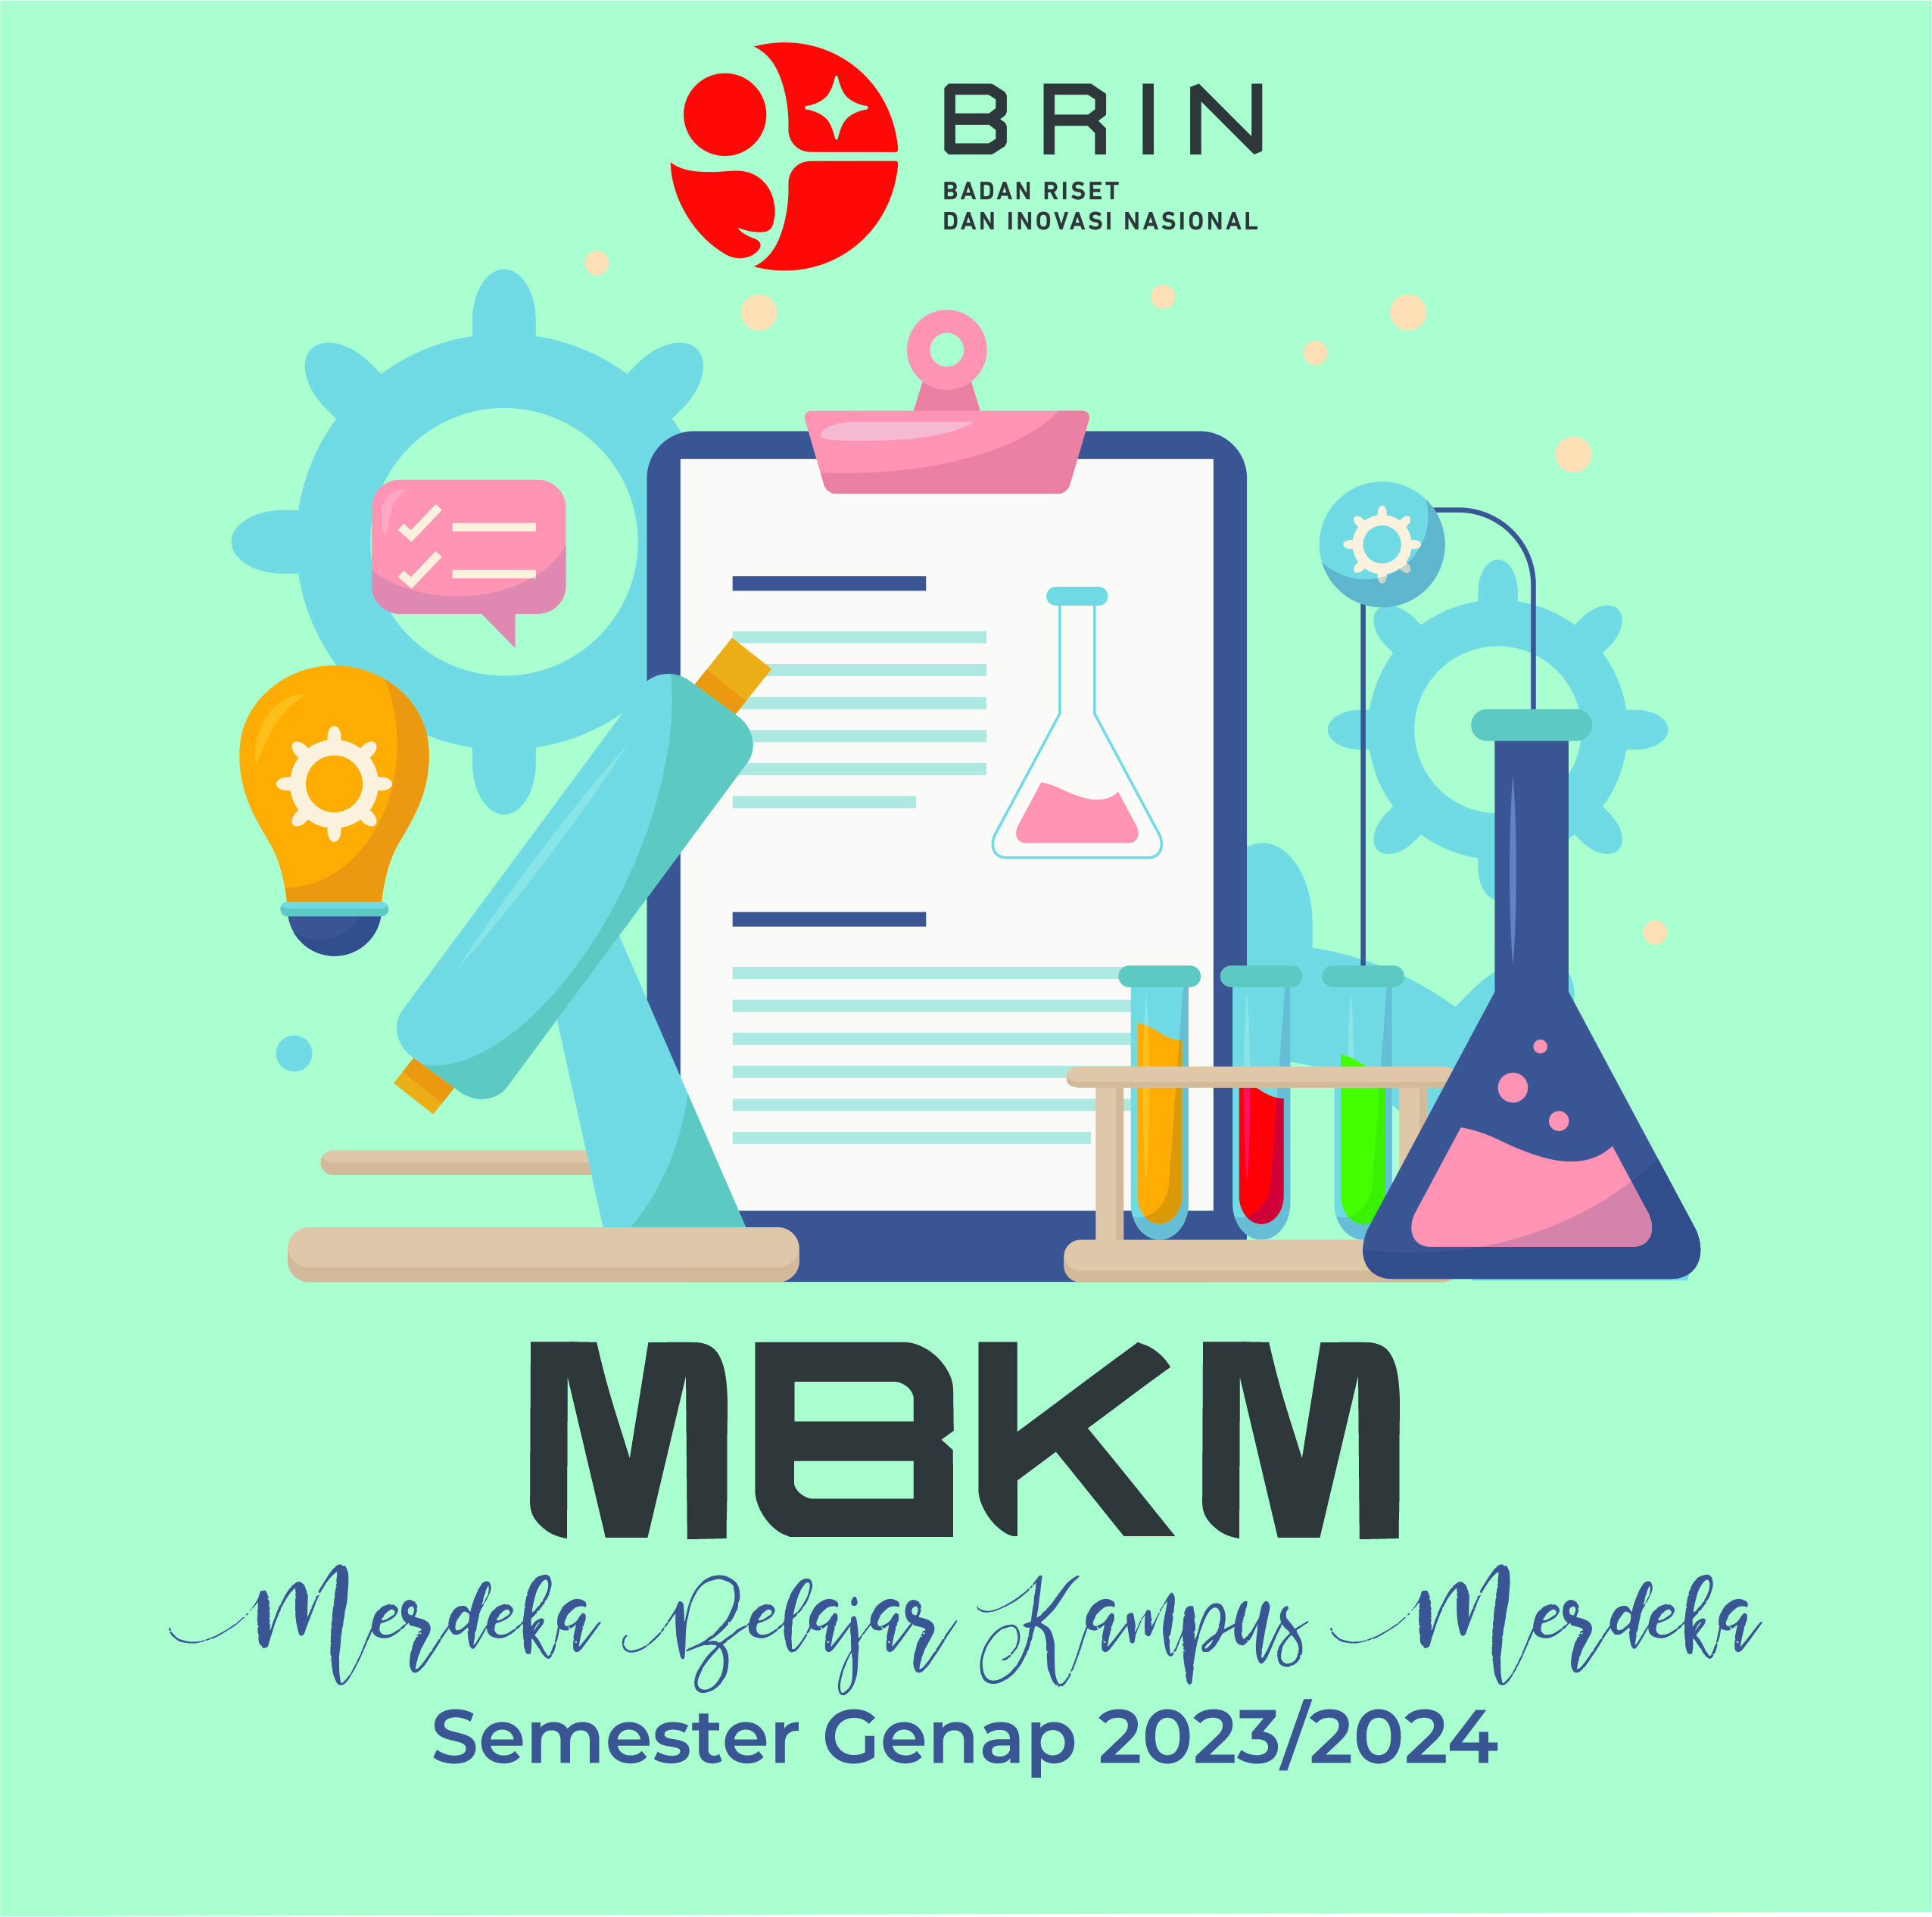 MBKM Magang/Praktek Kerja - Layanan Perpustakaan BRIN - Bandung Cisitu